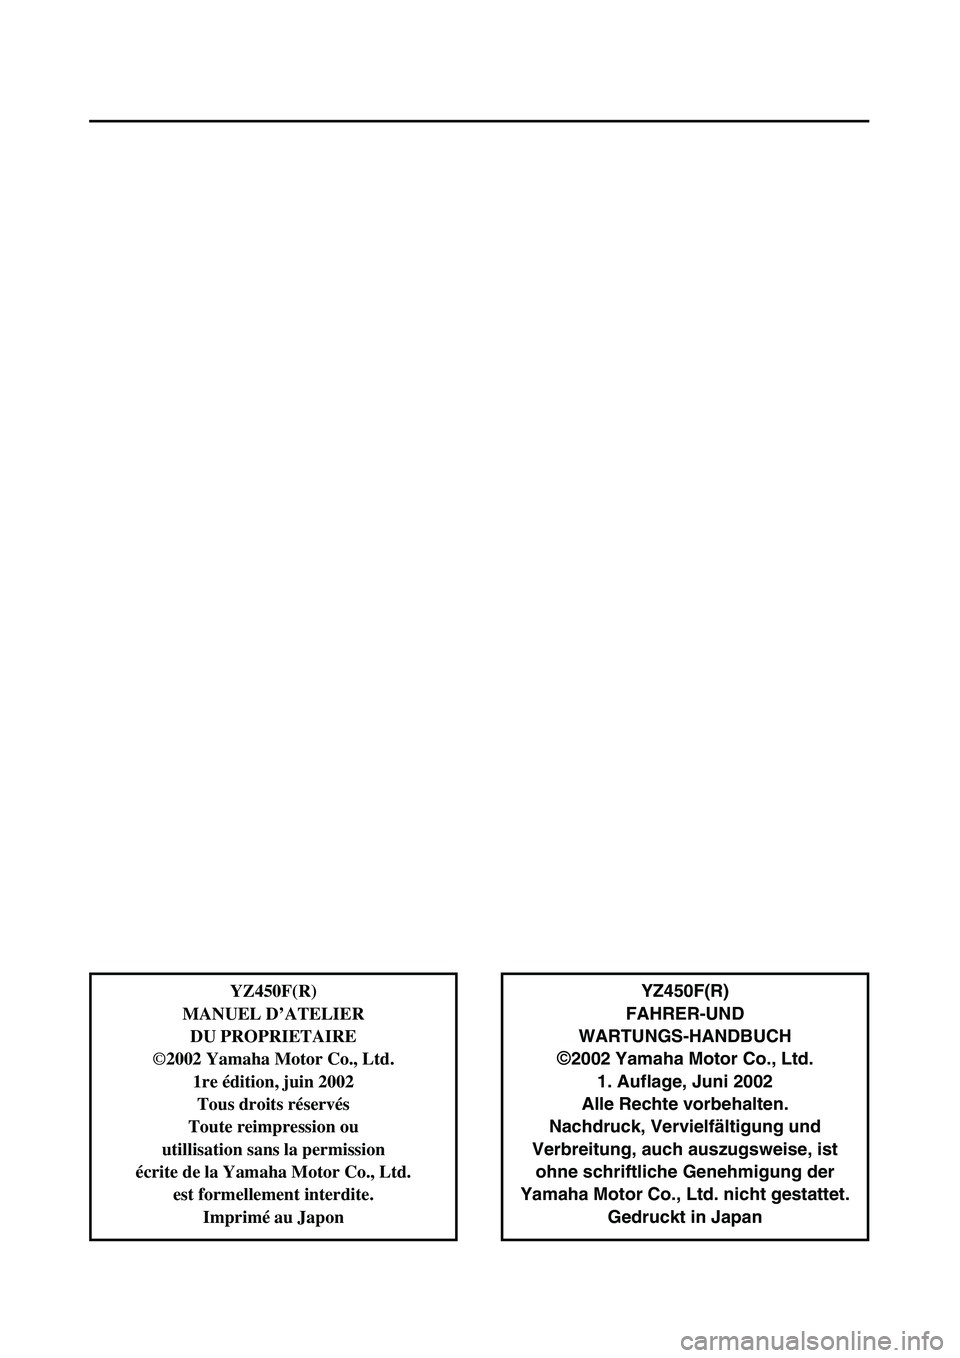 YAMAHA YZ450F 2003  Notices Demploi (in French)  
YZ450F(R)
FAHRER-UND 
WARTUNGS-HANDBUCH  
©  
2002 Yamaha Motor Co., Ltd.
1. Auflage, Juni 2002
Alle Rechte vorbehalten.
Nachdruck, Vervielfältigung und
Verbreitung, auch auszugsweise, ist
ohne sc